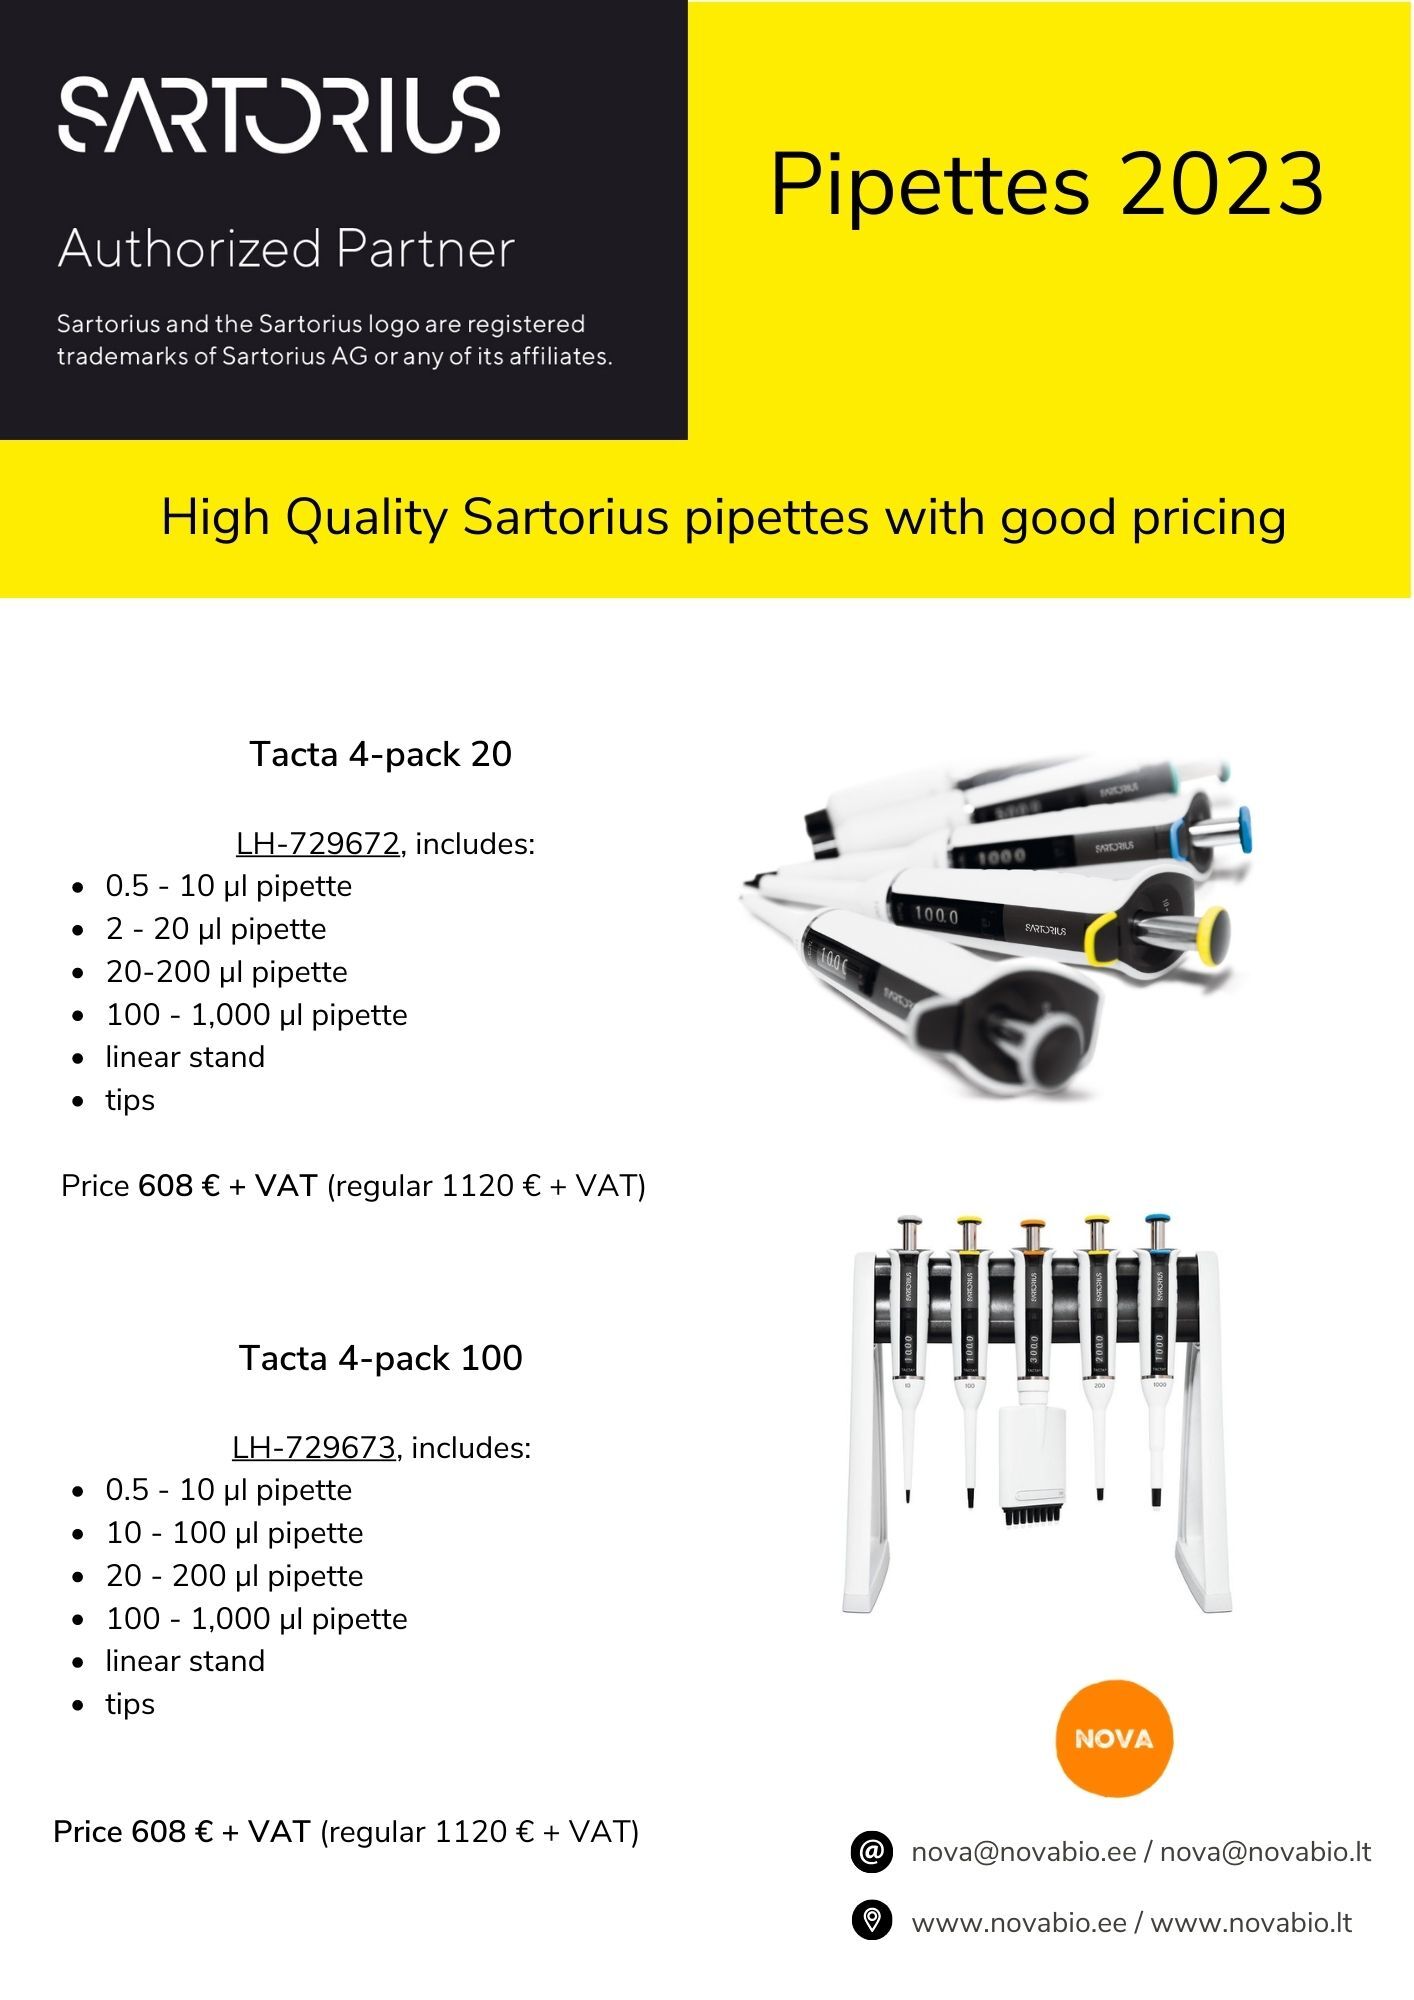 Sartorius pipettes promotion